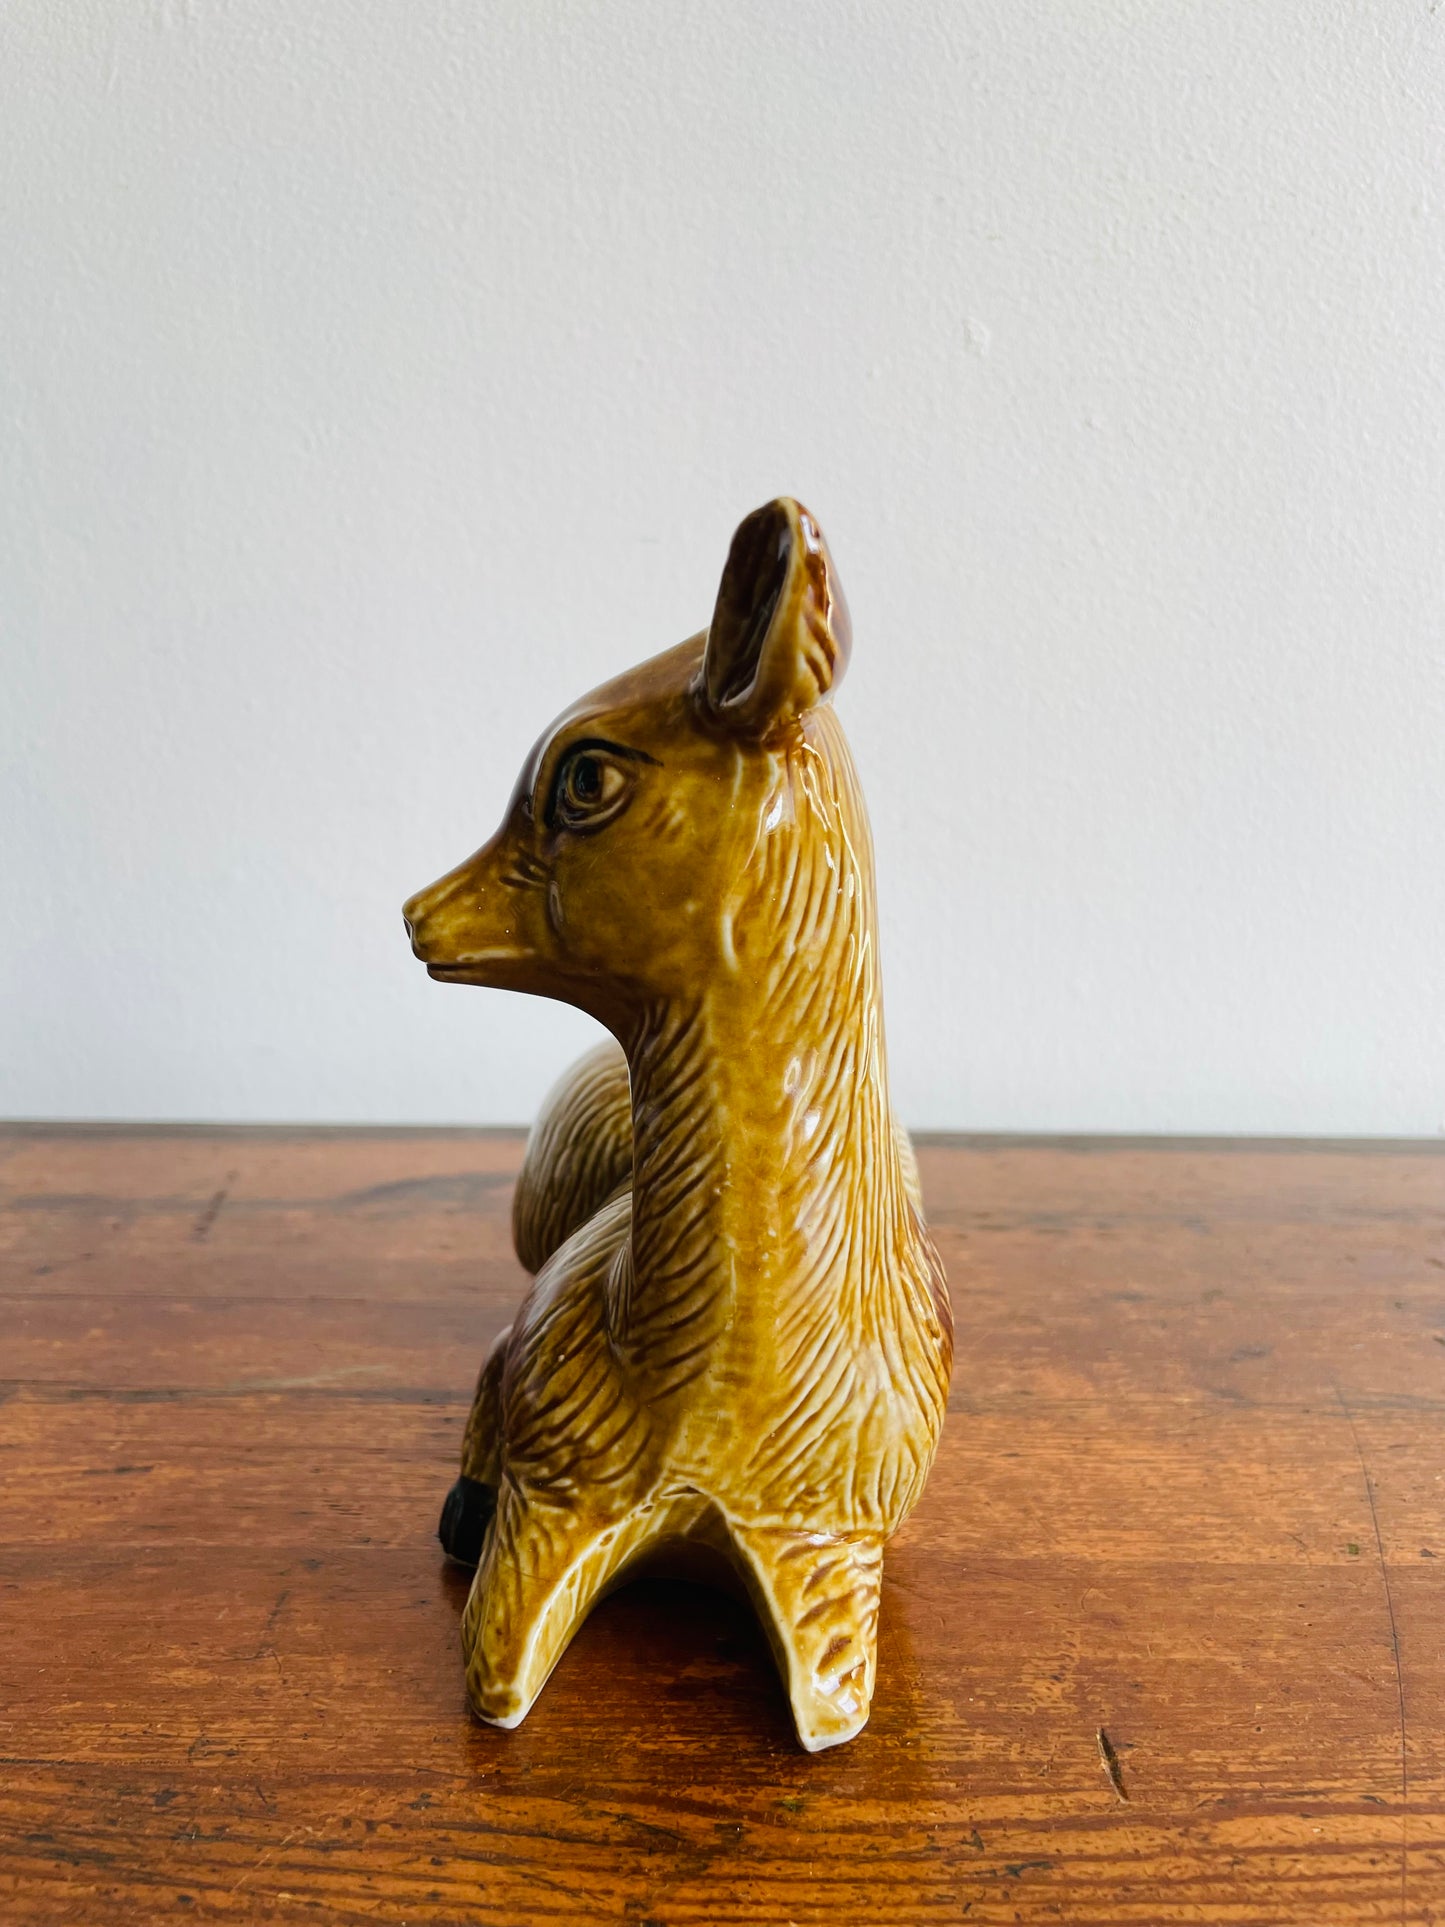 Ceramic Fawn Deer Figurine - Made in Brazil